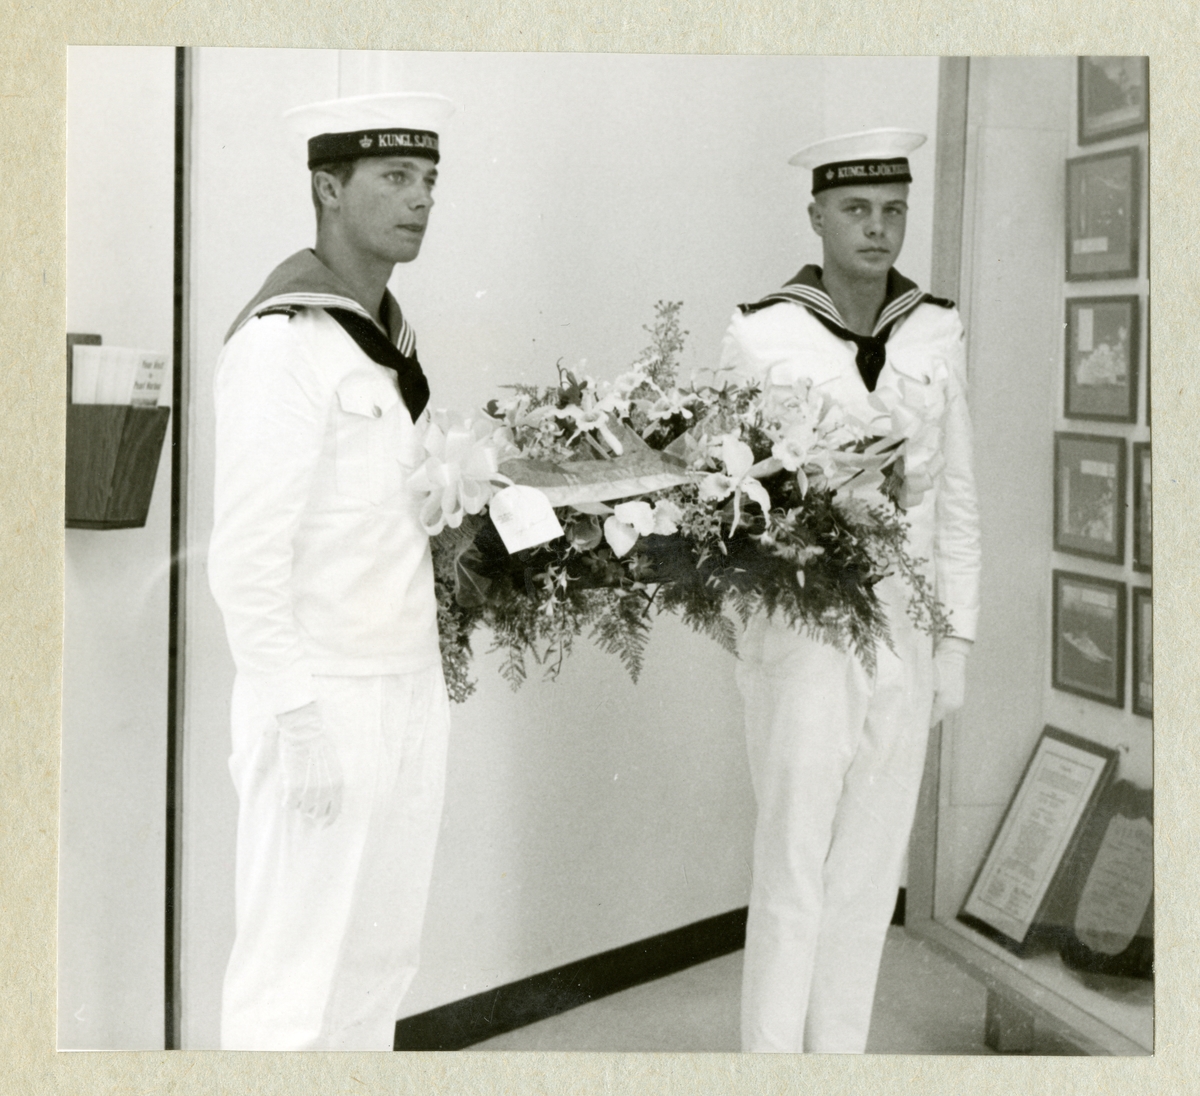 Bilden föreställer en besättningsman och Carl XVI Gustaf i vita uniformer. Mellan sig håller de ett stort blomsterarrangemang. Bilden är tagen under minfartyget Älvsnabbens långresa 1966-1967.